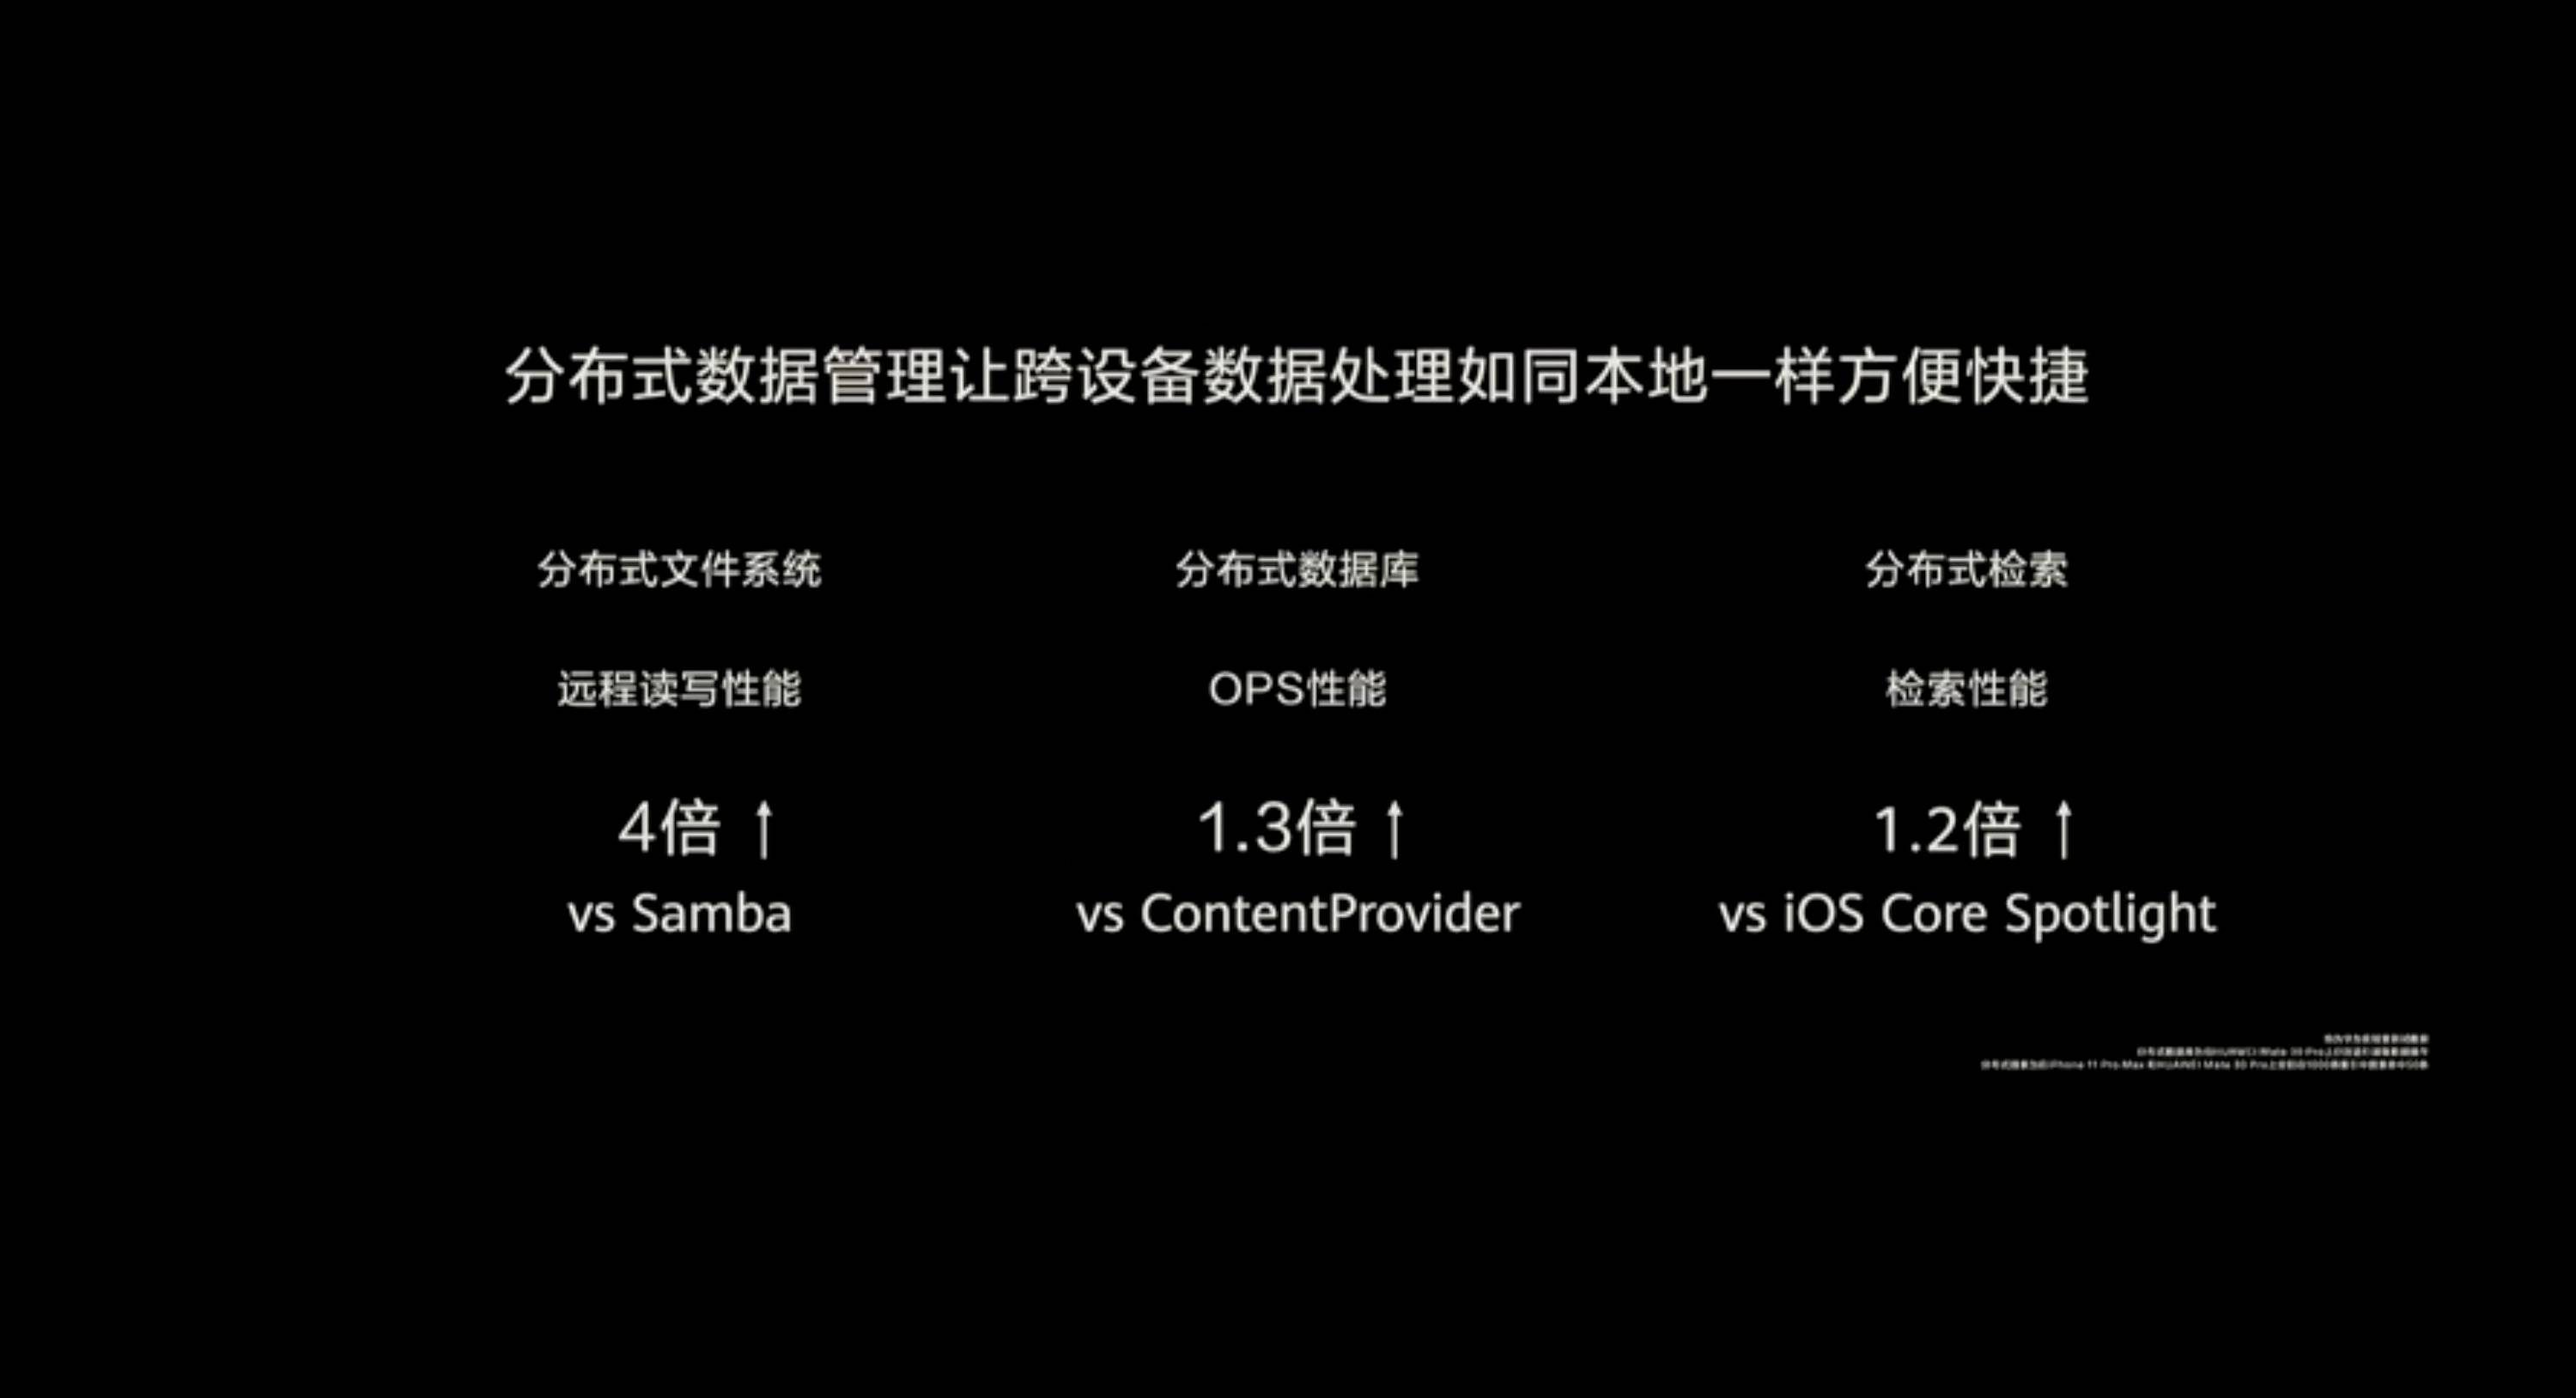 HDC 2020 PPT 50 - Huawei Hongmeng 2.0 è qui! Se non esegui un secondo Android, sarai sul tuo telefono entro la fine dell’anno